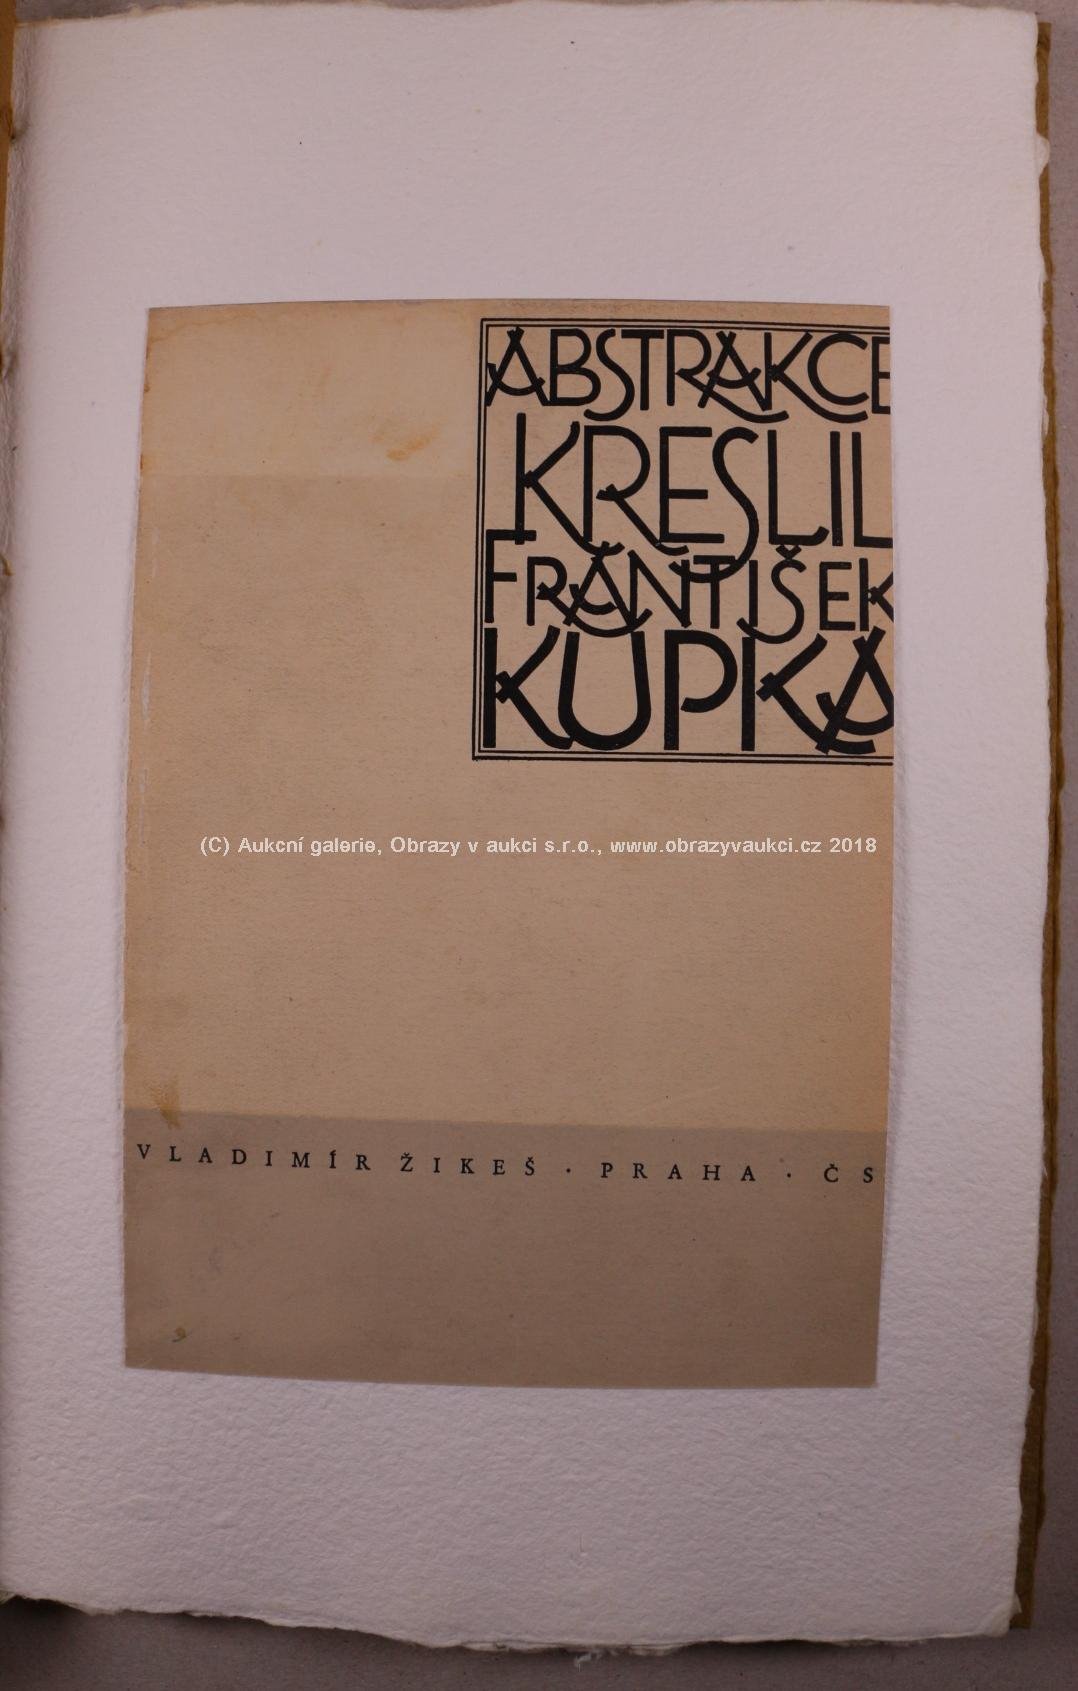 František  Kupka - Abstrakce